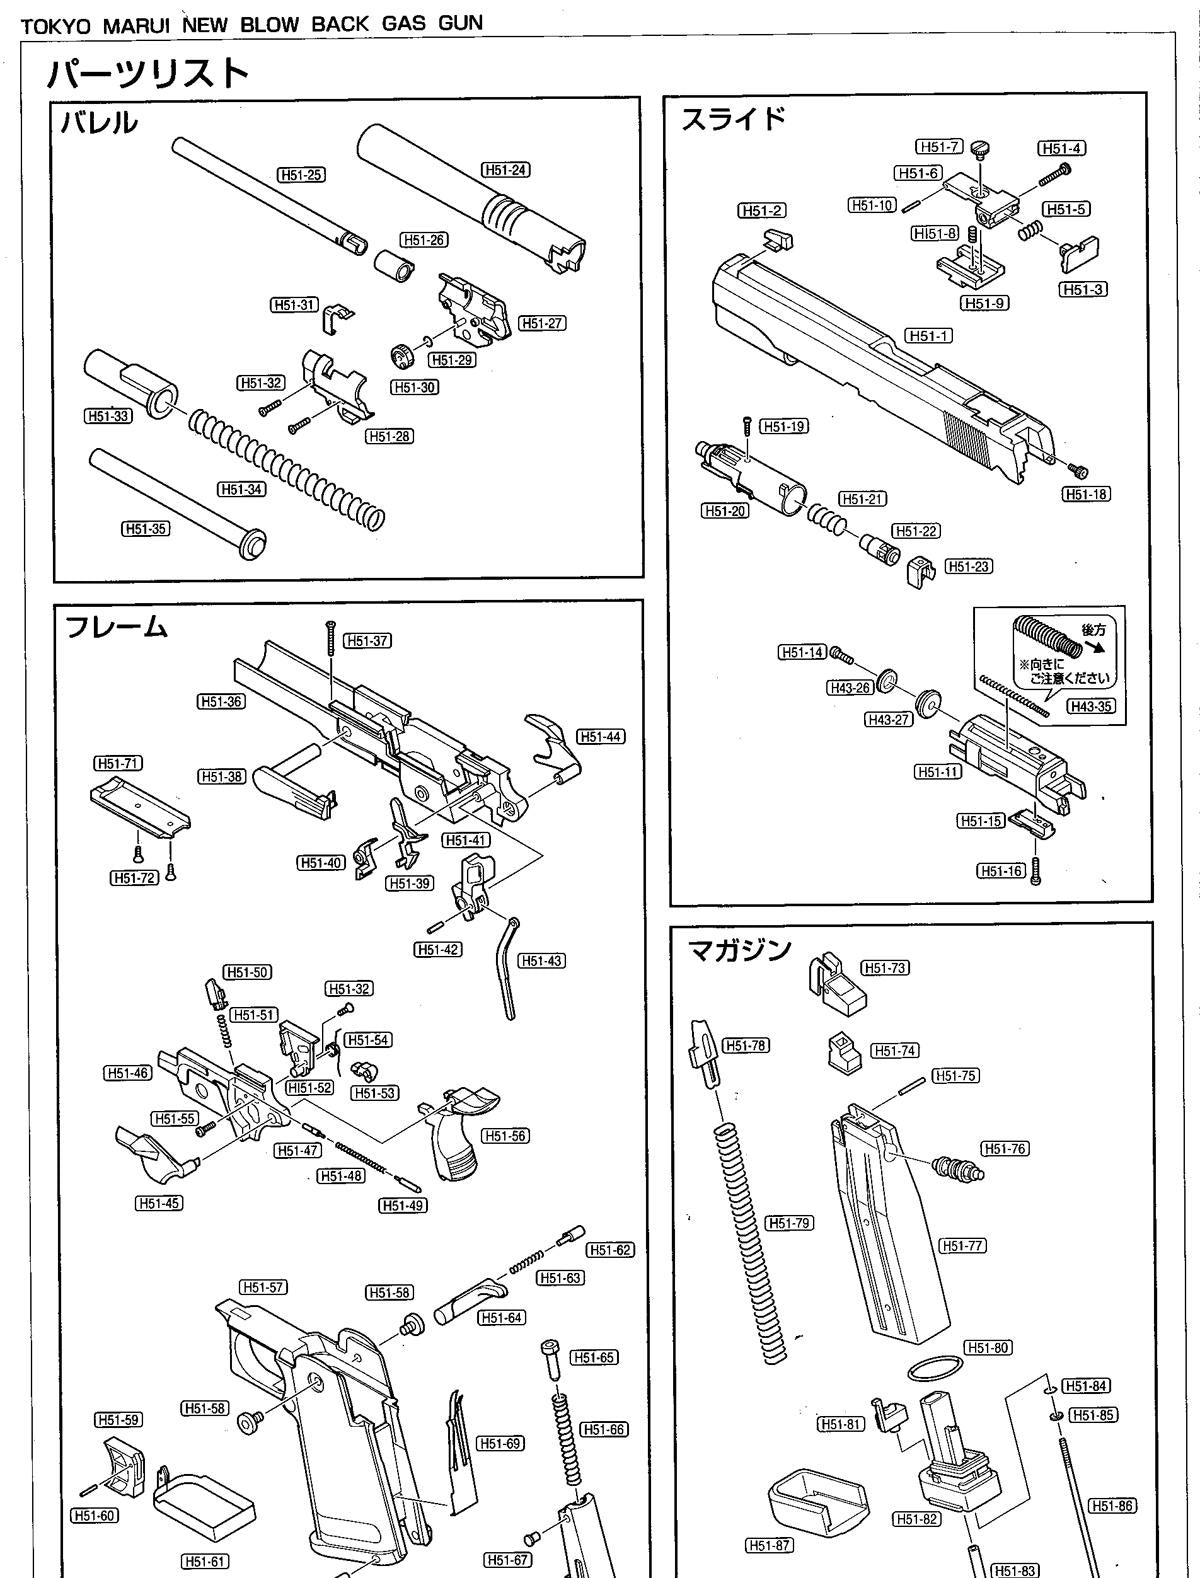 Tokyo Marui Hi-Capa - Replacement Part H51-65 - Hammer spring pin